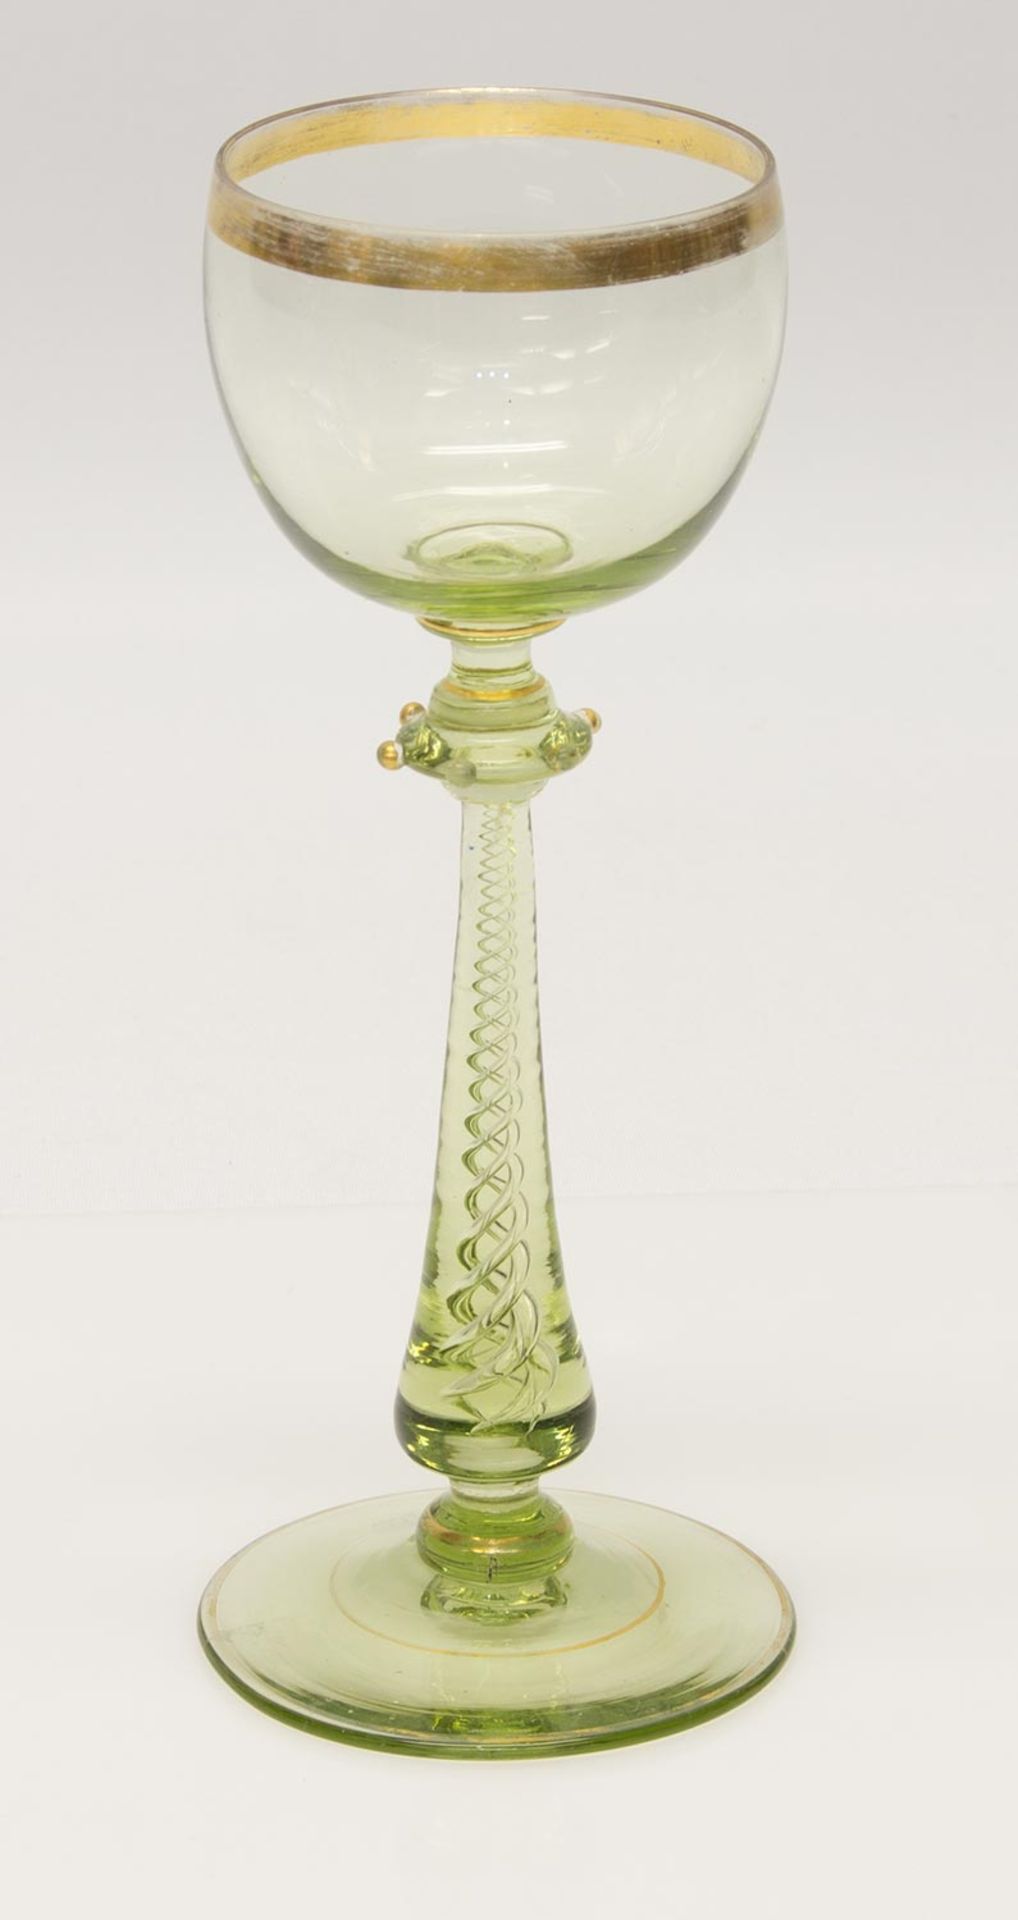 WeinkelchJosephinenhütte um 1900, Grünglas m. Goldrand u. -dekor, spiralförmige Einschmelzung im